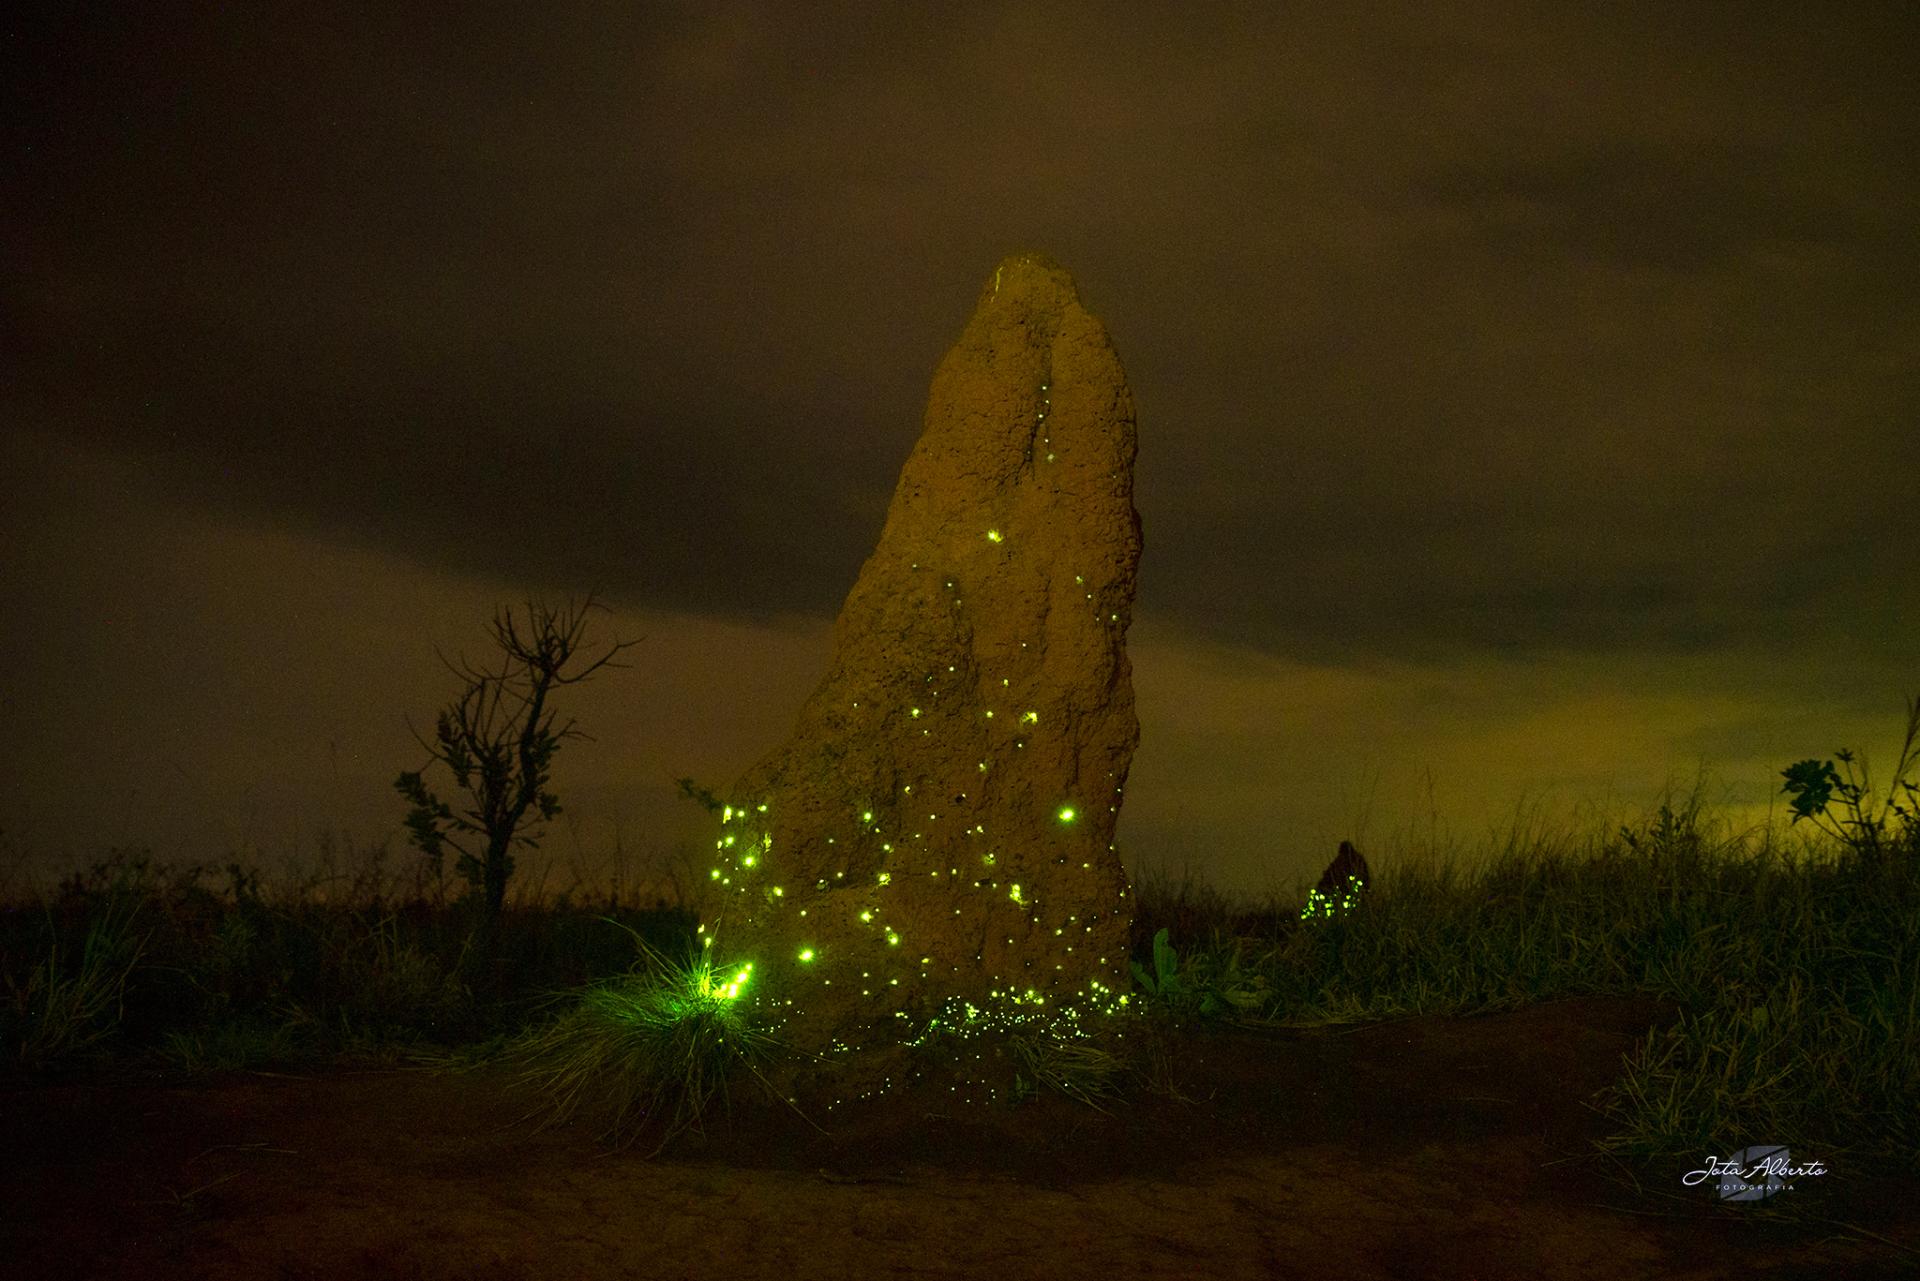 Diversidade de besouros bioluminescentes no cerrado diminuiu em 30 anos